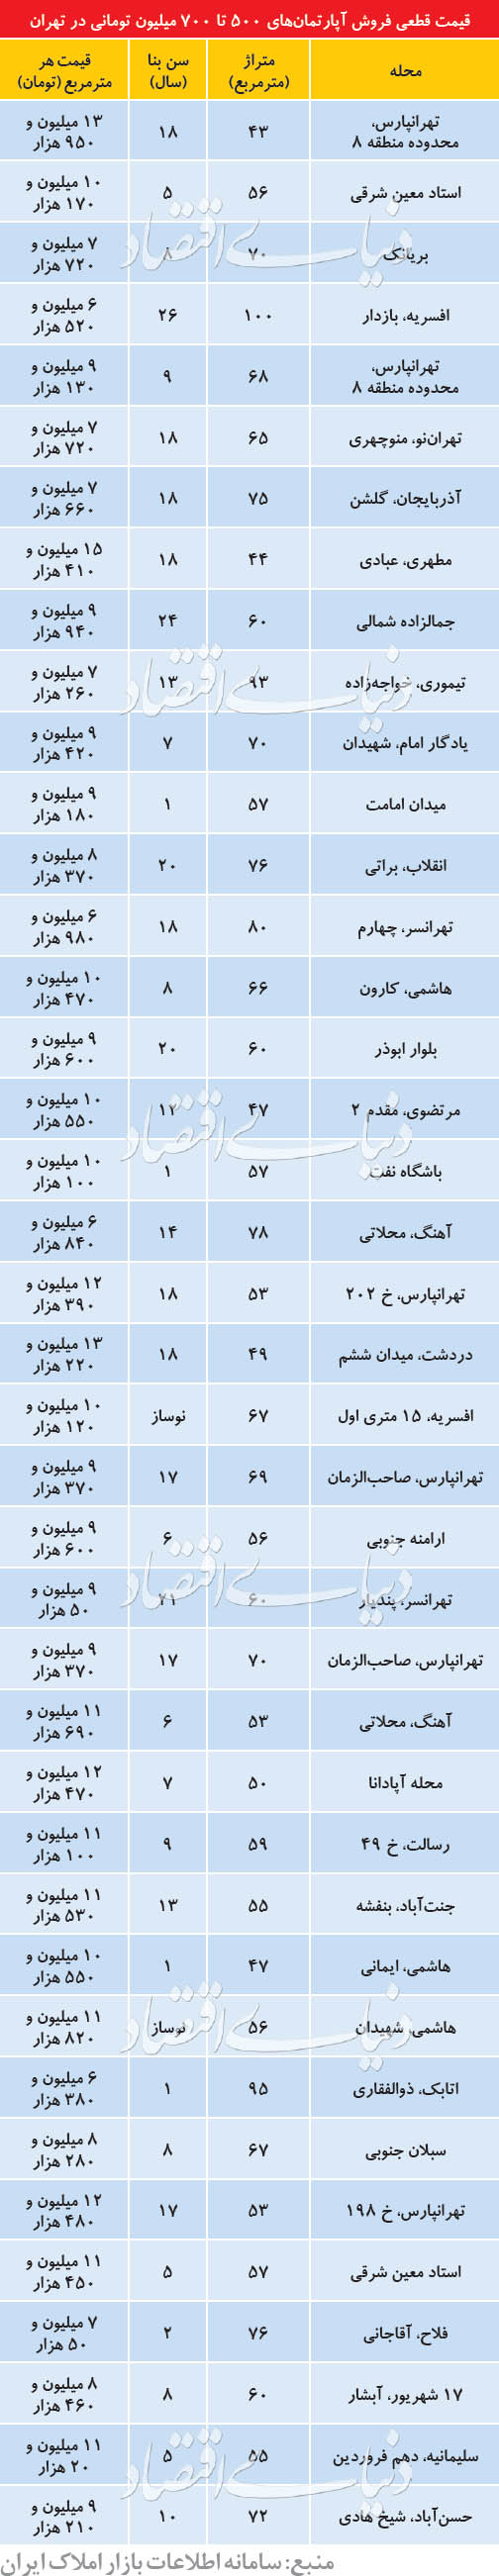 قیمت انواع آپارتمان های ارزان در تهران+جدول